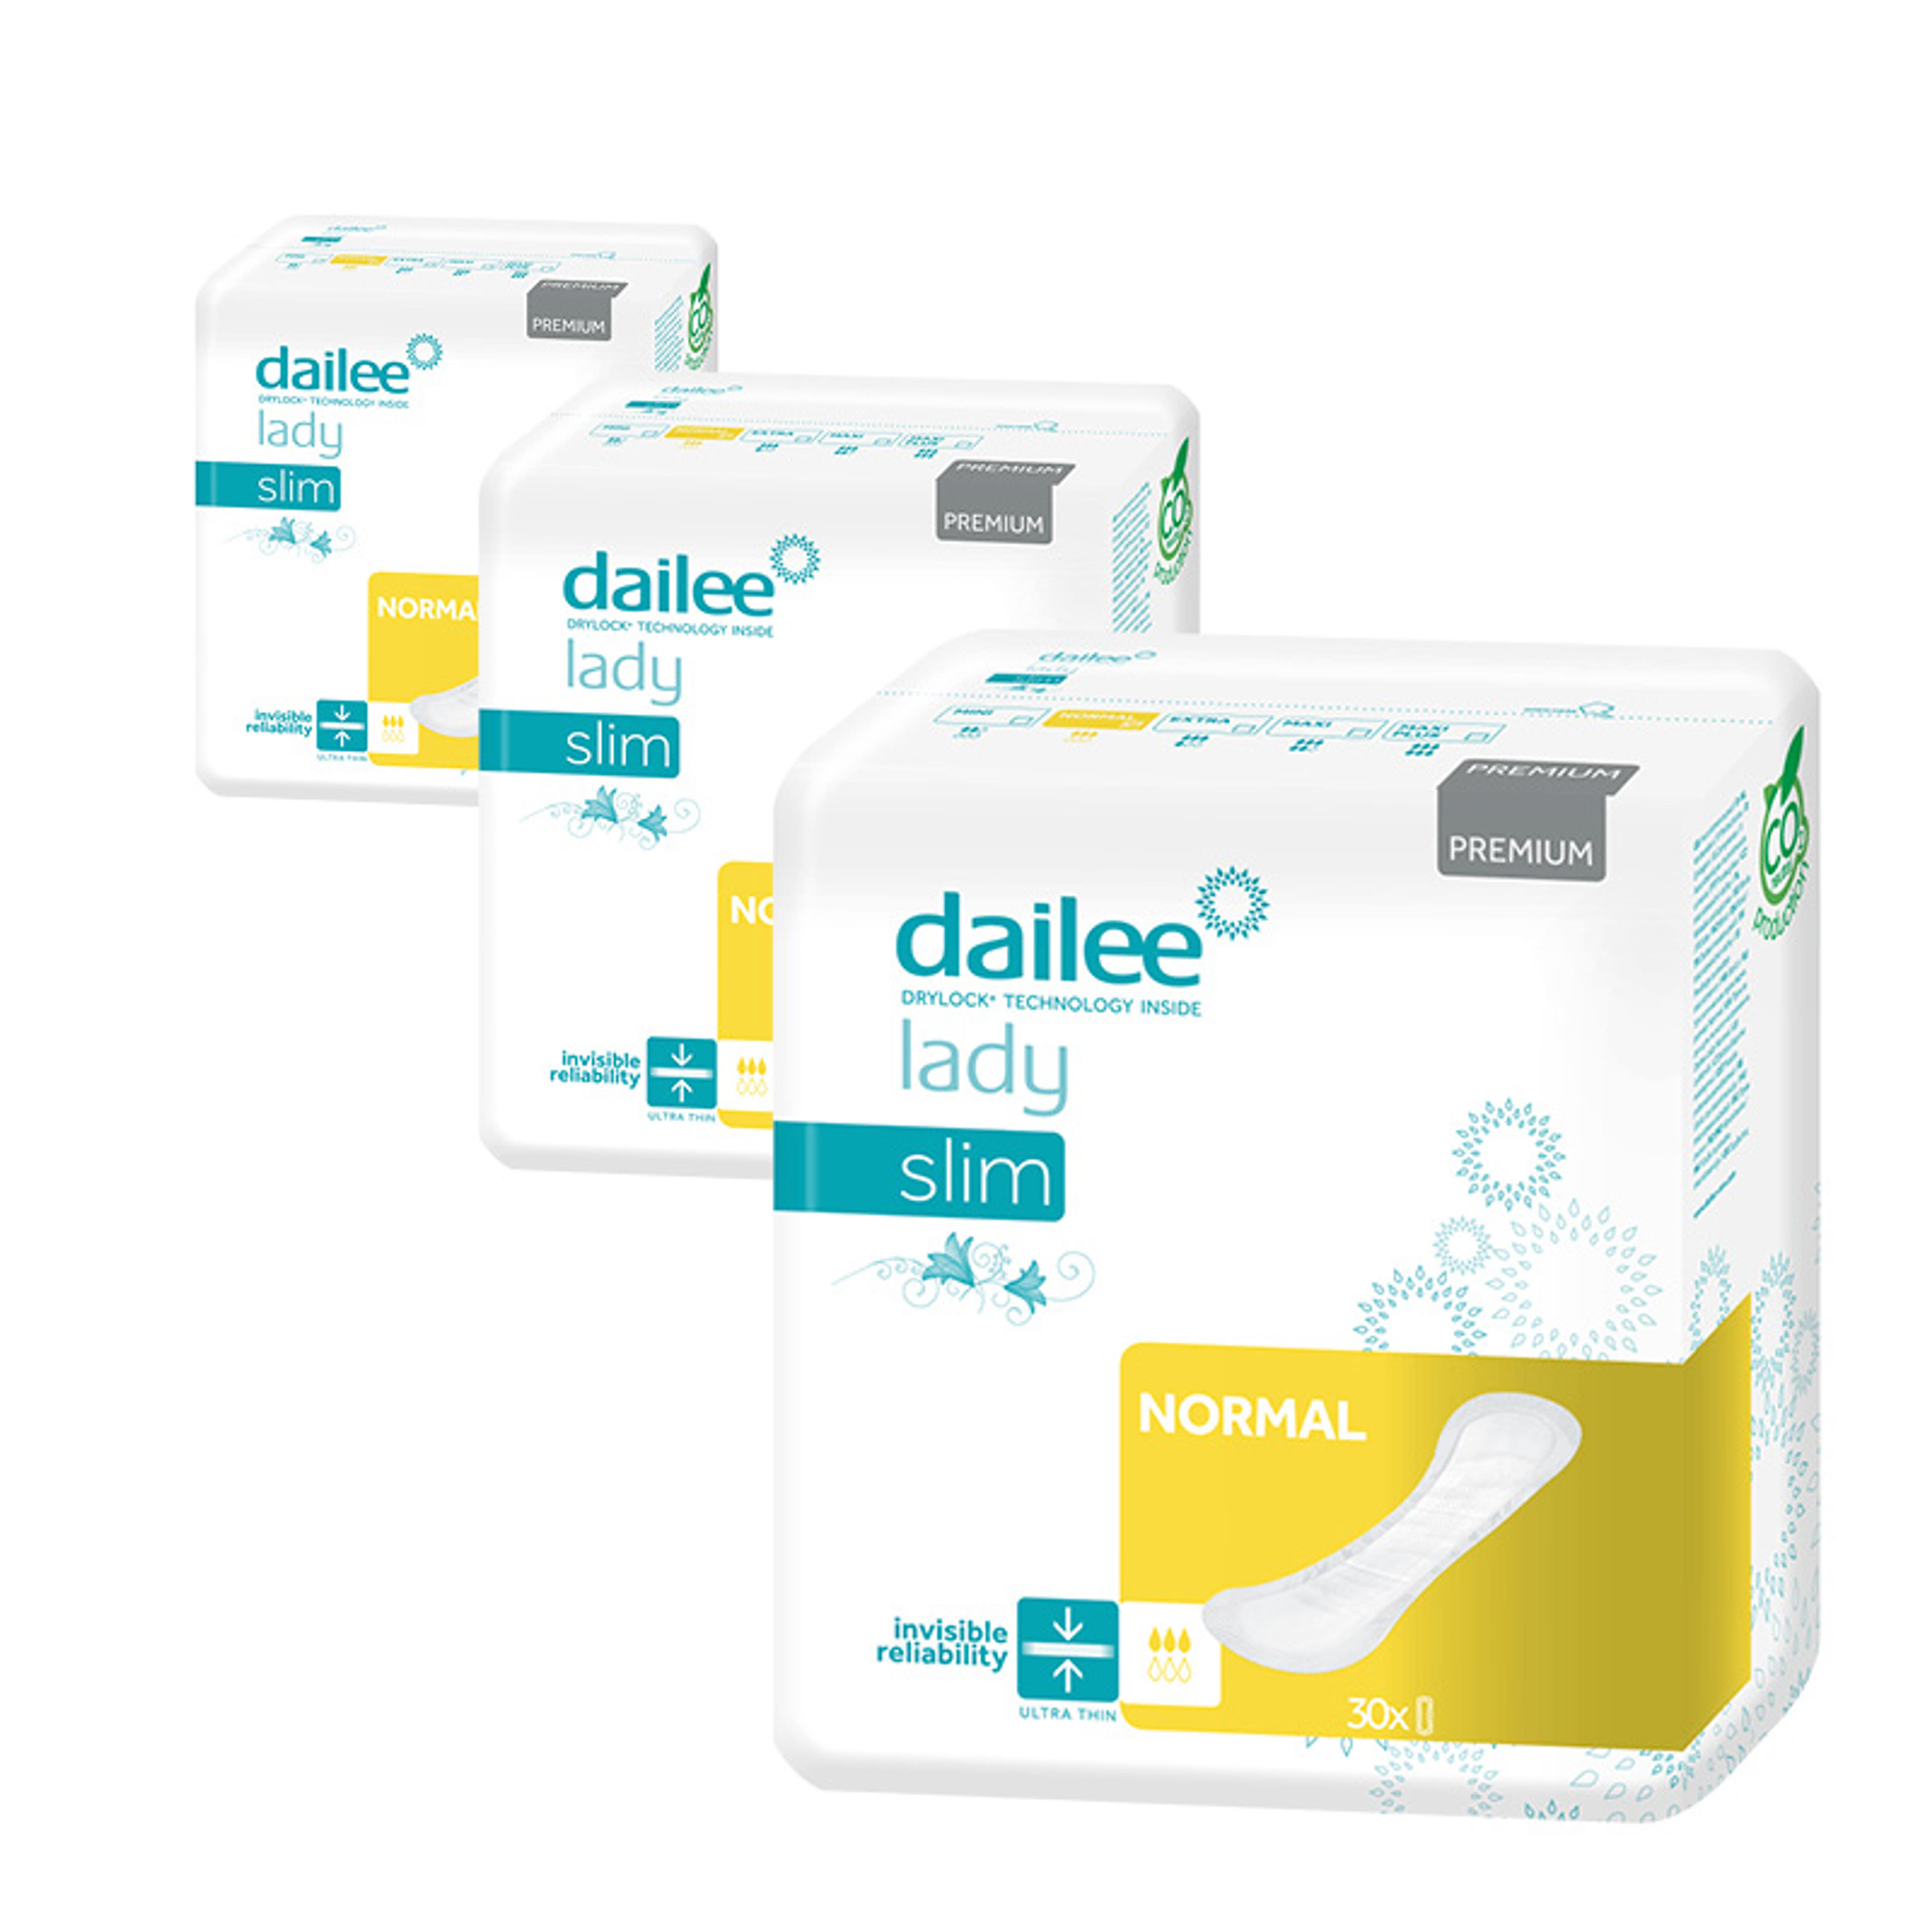 Dailee Lady Premium Slim Normal inkontinencia betét csomag